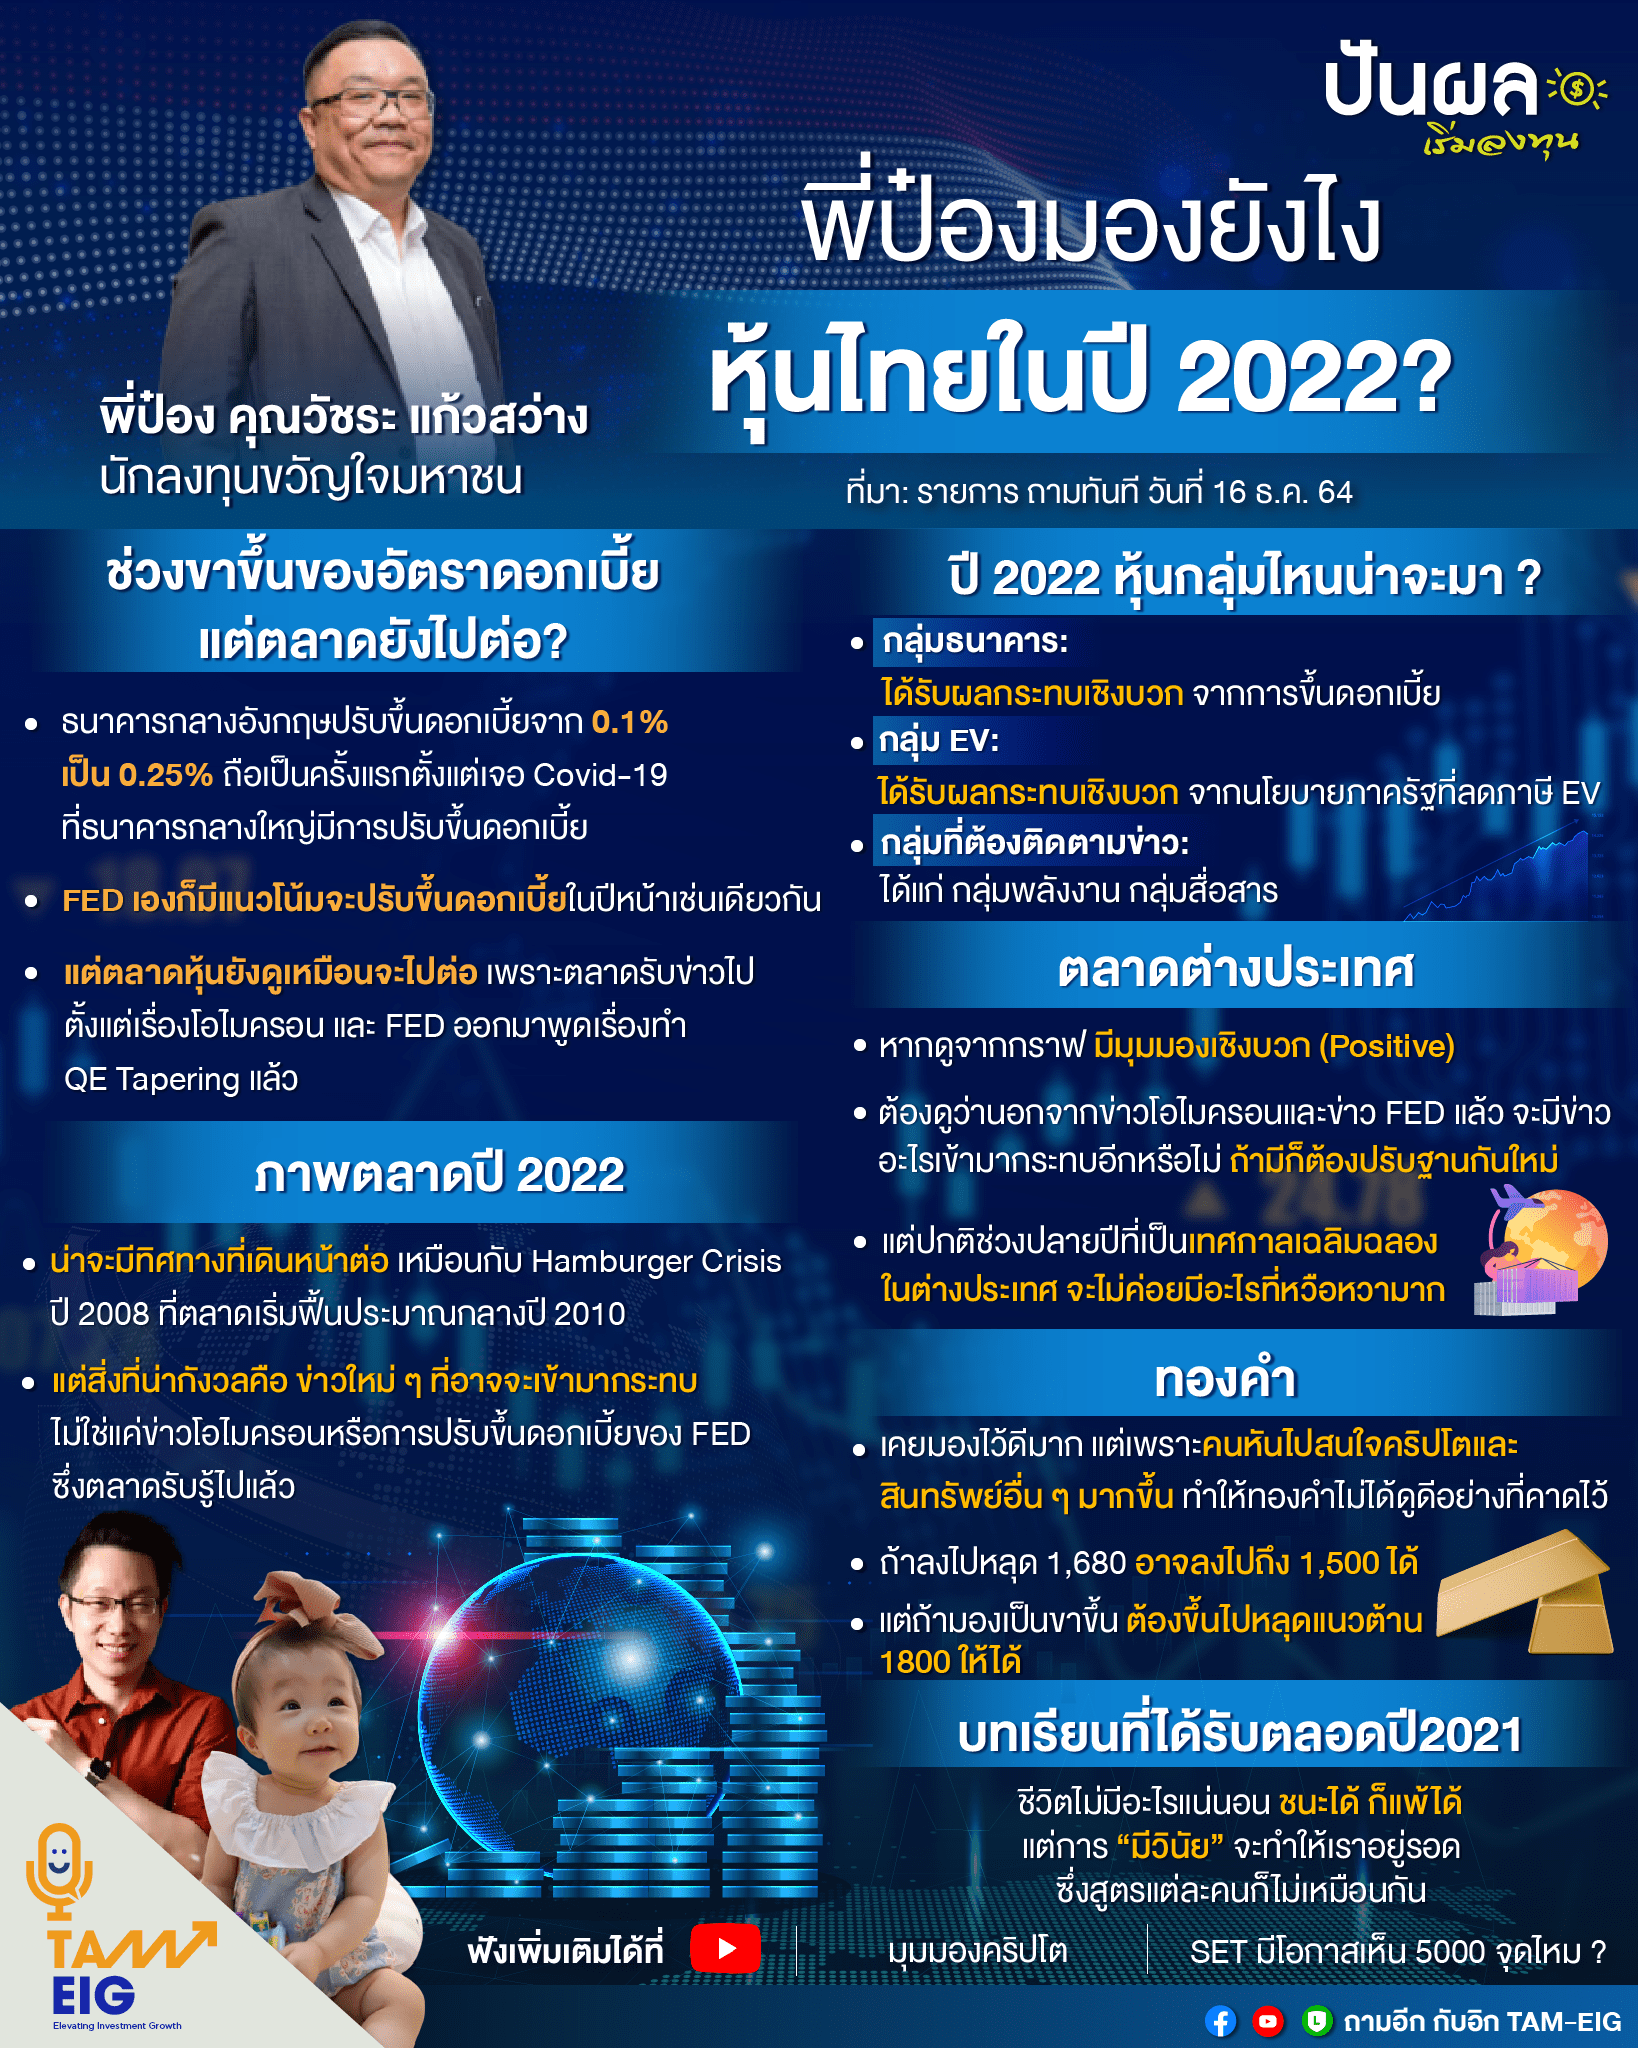 พี่ป๋องมองยังไง หุ้นไทยในปี 2022? ถามอีก กับ พี่ป๋อง คุณวัชระ แก้วสว่าง นักลงทุนขวัญใจมหาชน